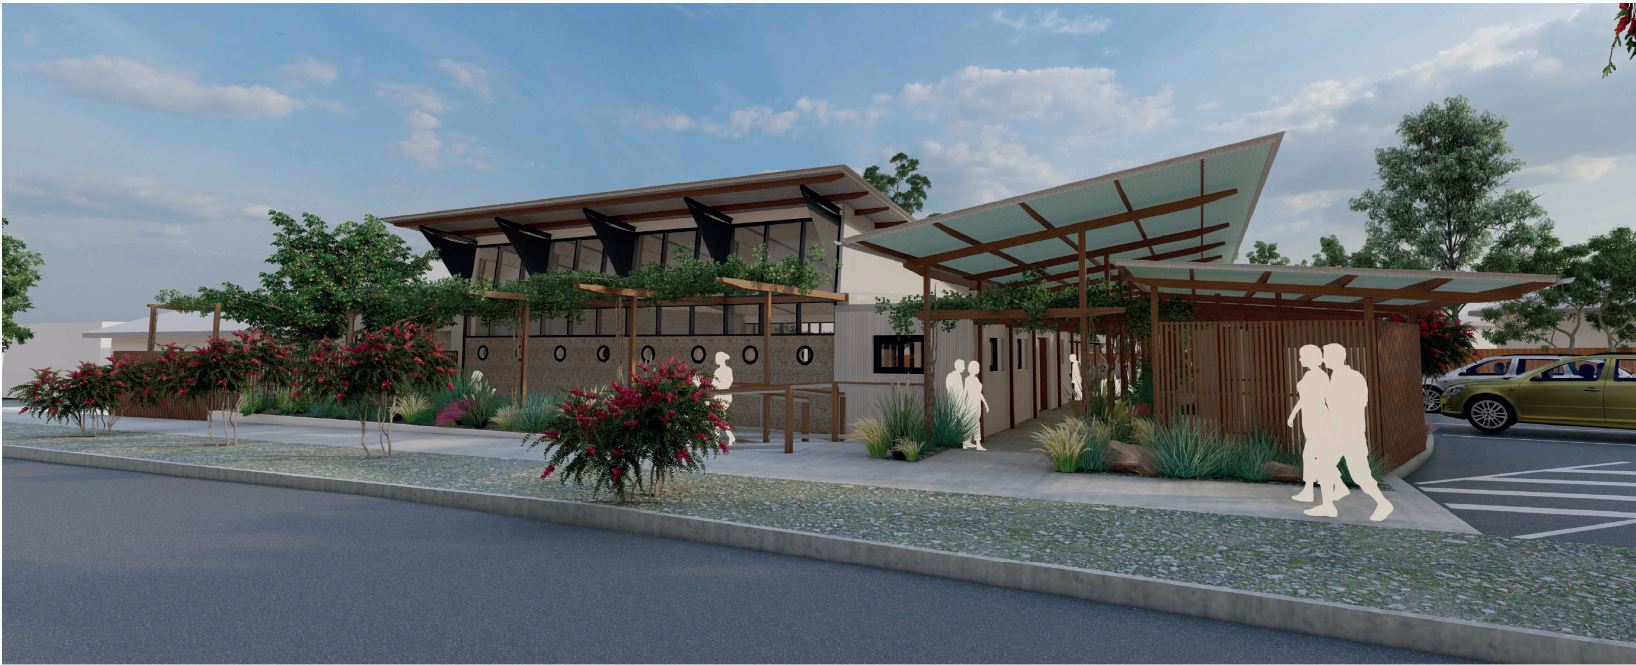 Pasadena Community Centre Concept